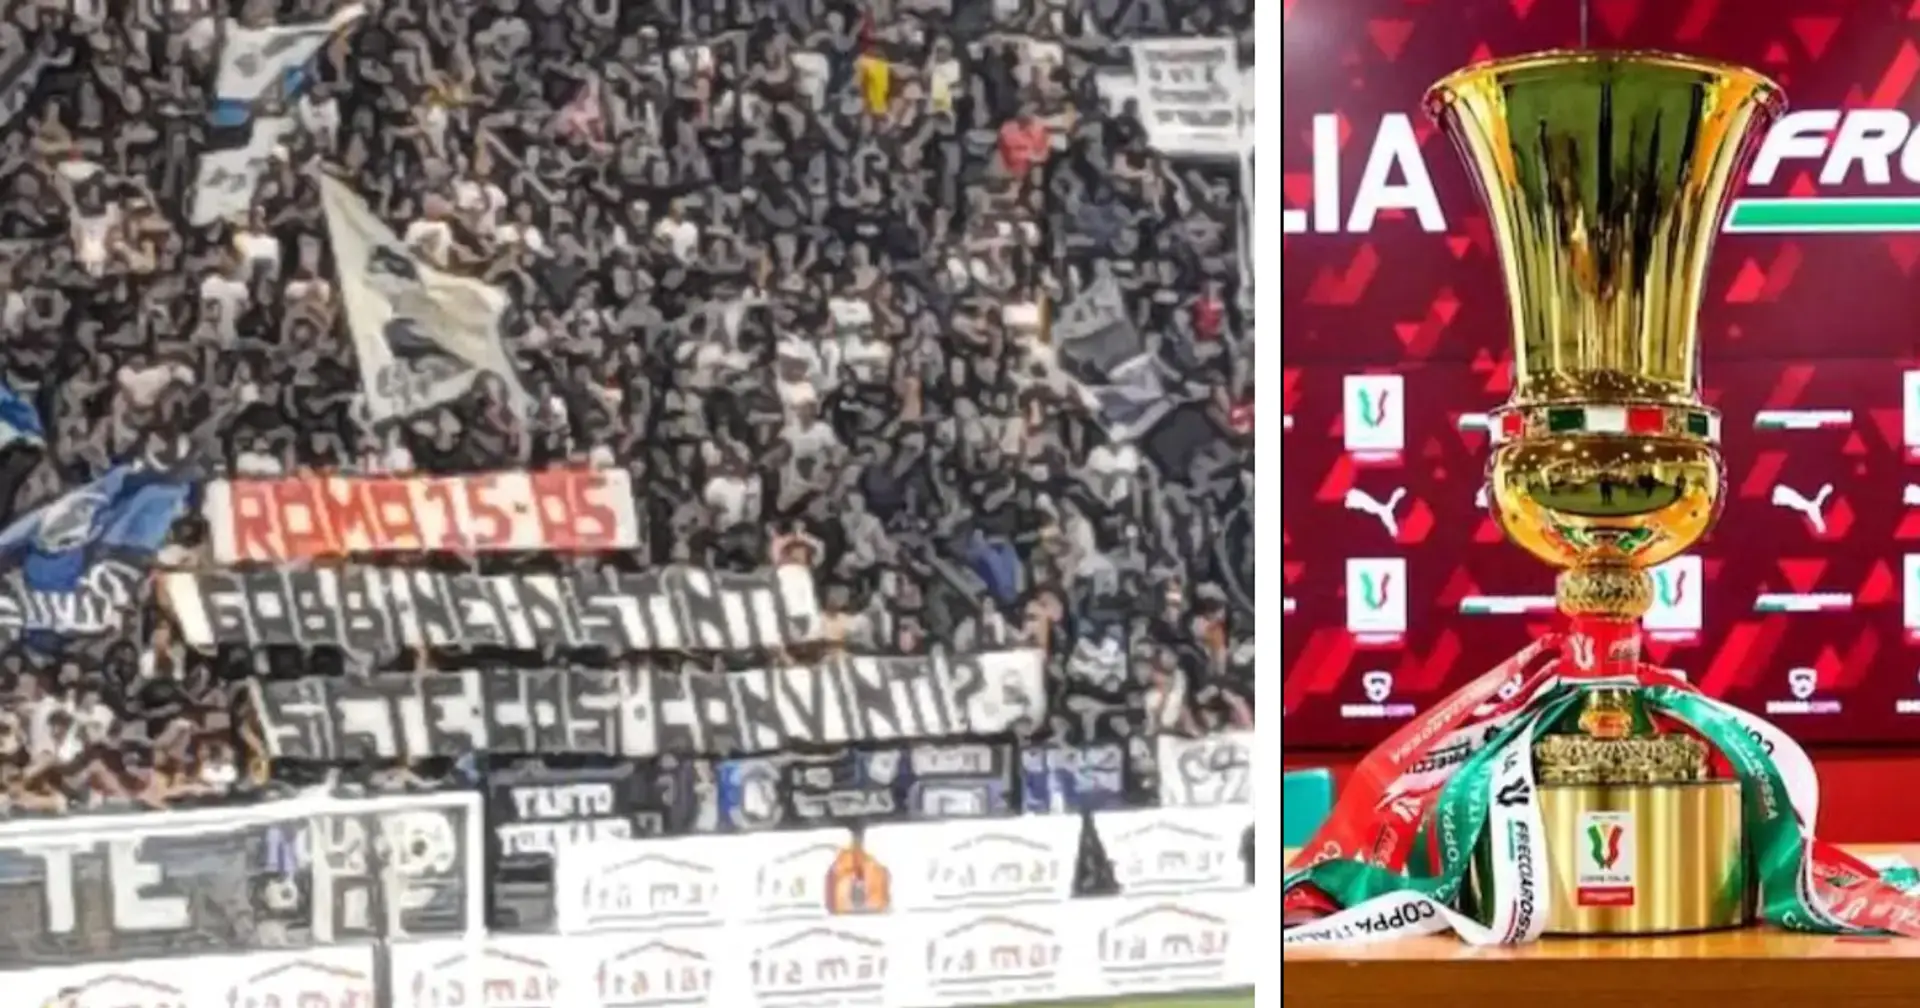 La minaccia dei tifosi dell'Atalanta a quelli della Juventus verso la finale di Coppa Italia: "Siete convinti?"